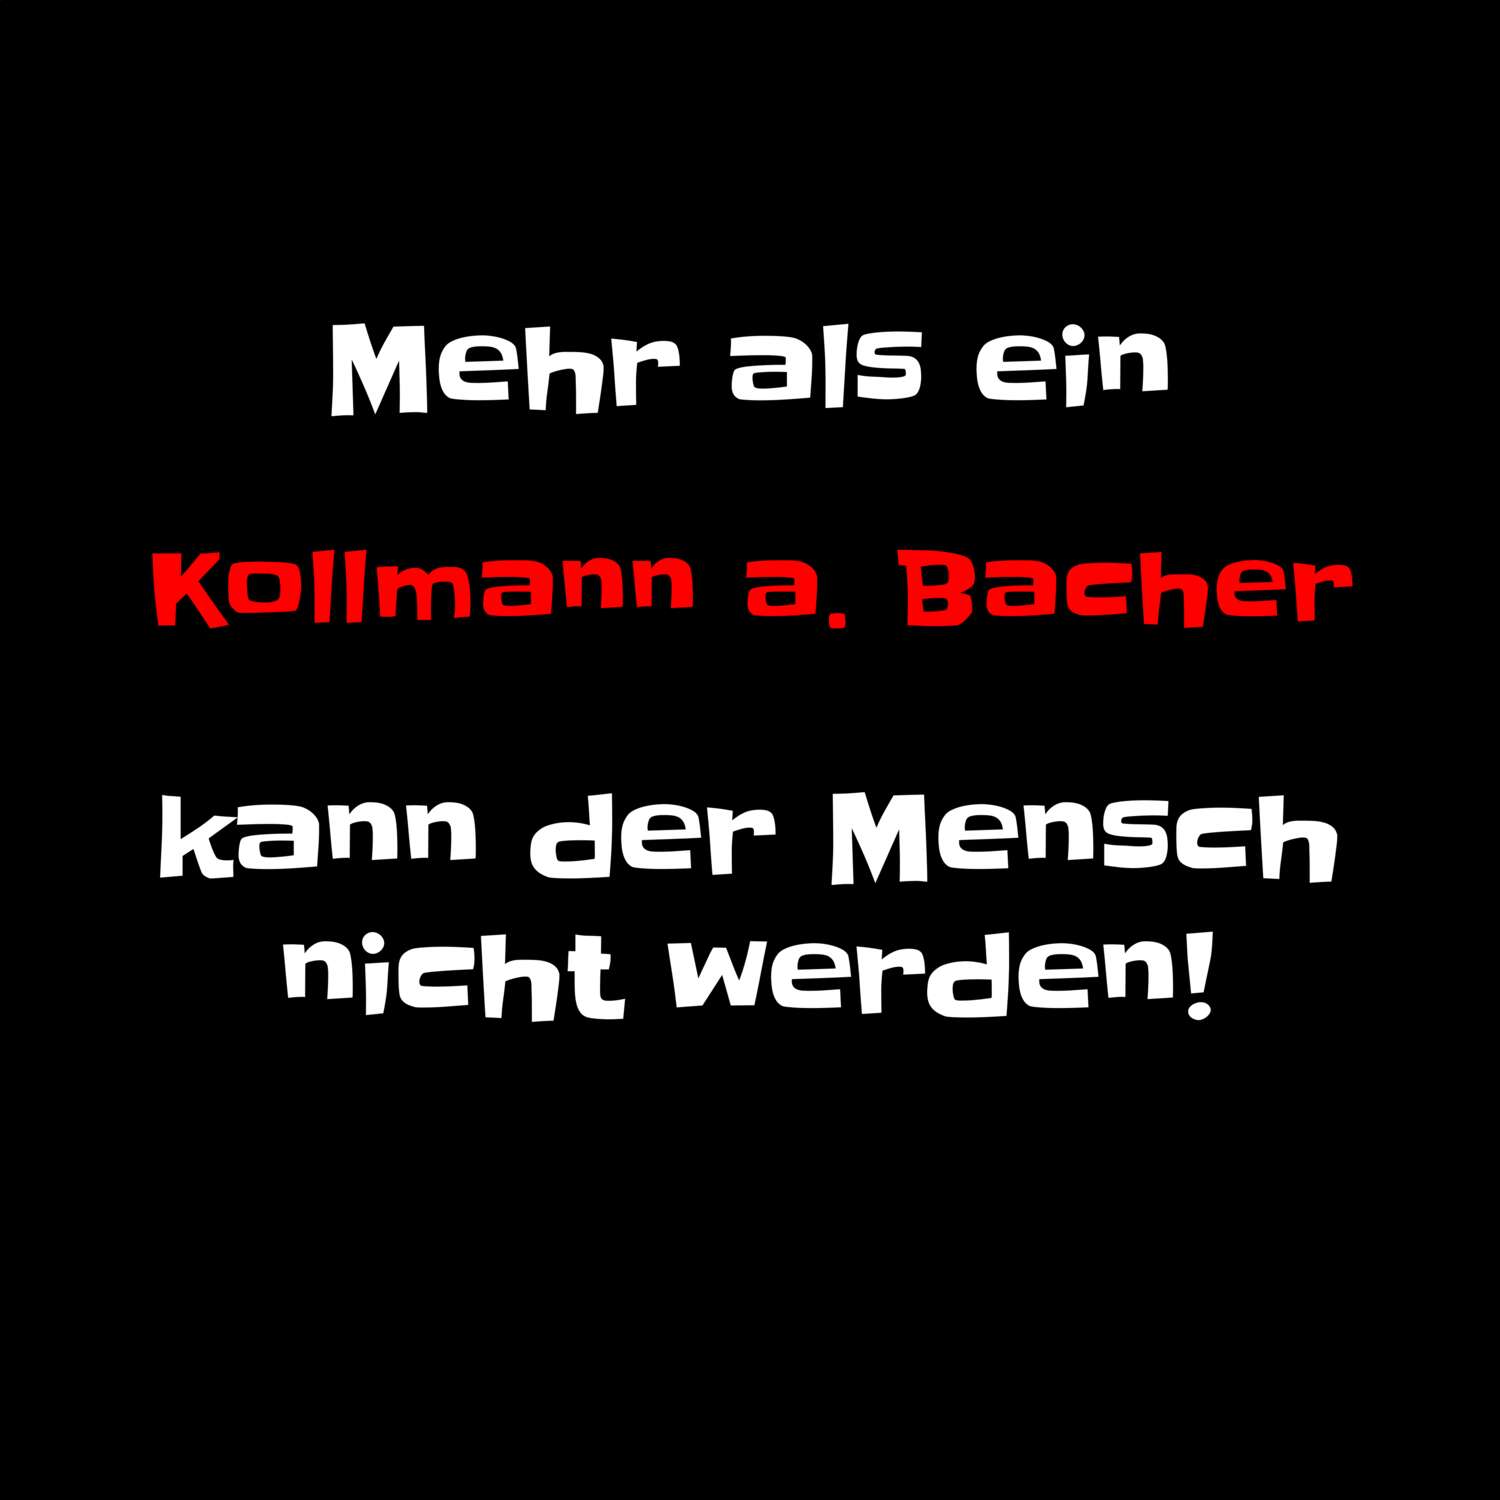 Kollmann a. Bach T-Shirt »Mehr als ein«